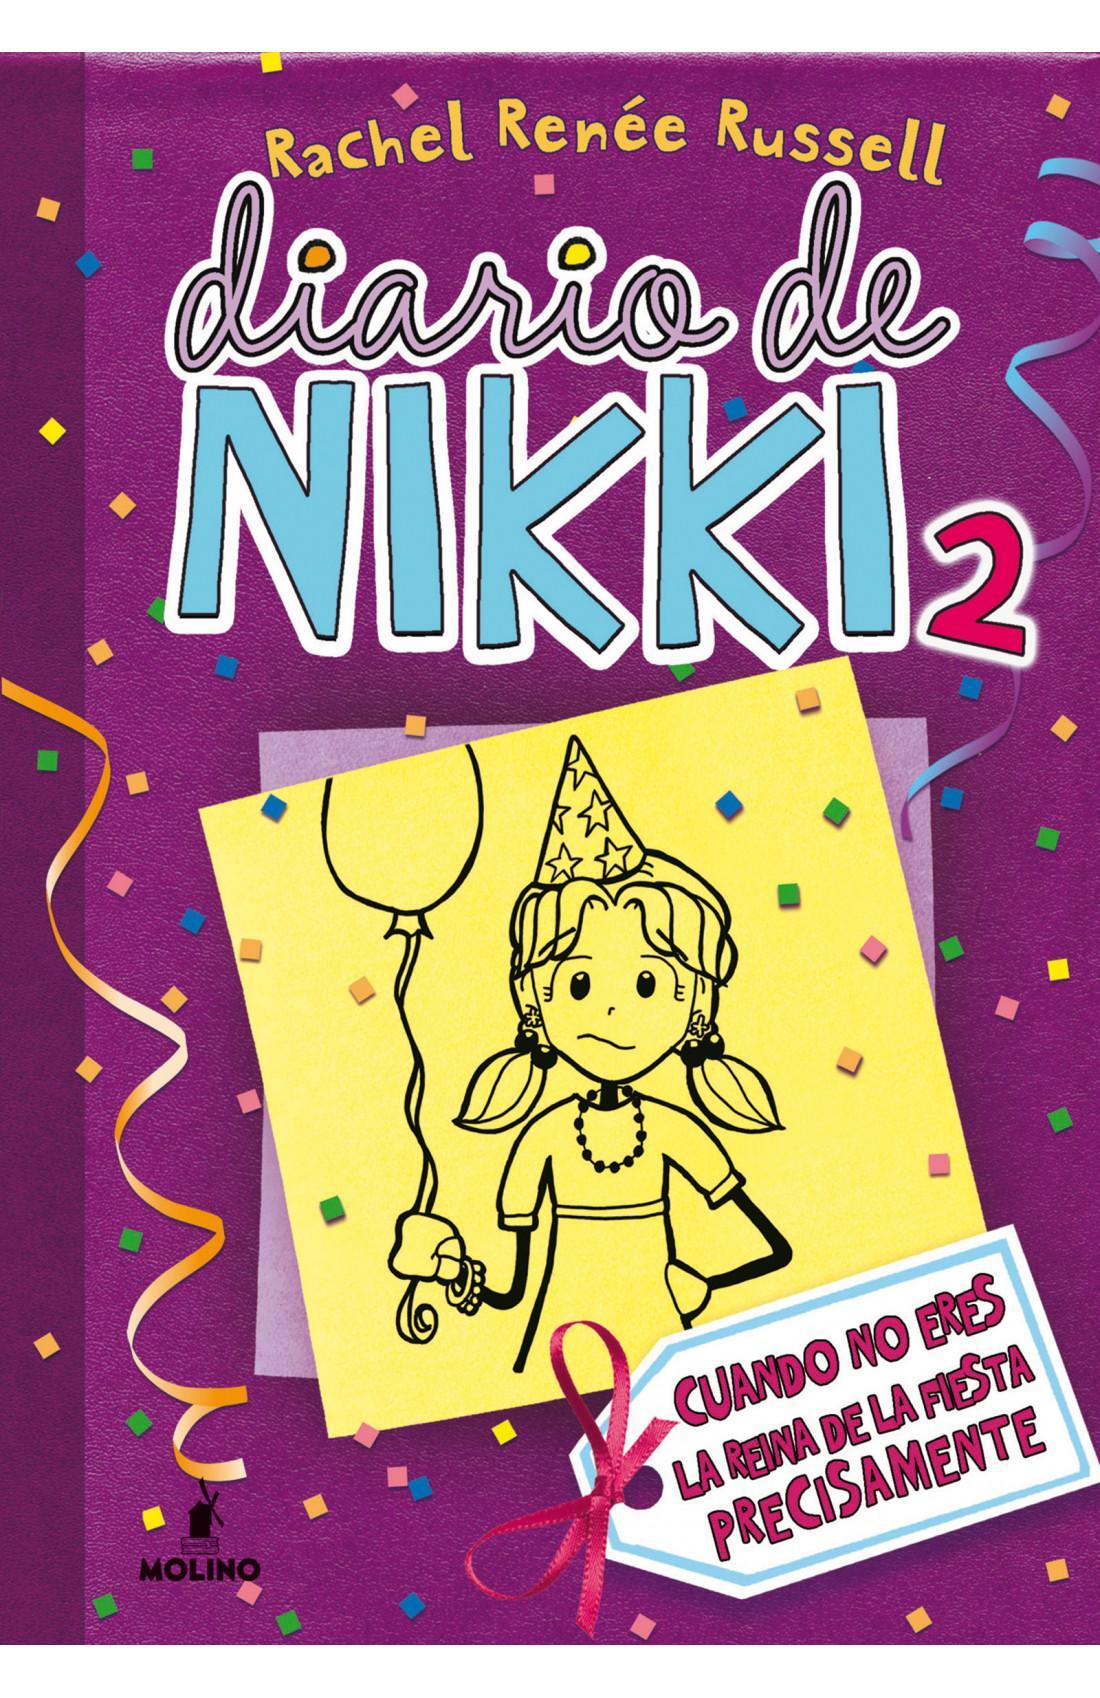 Diario de Nikki 2 - Rachel Renee Russell